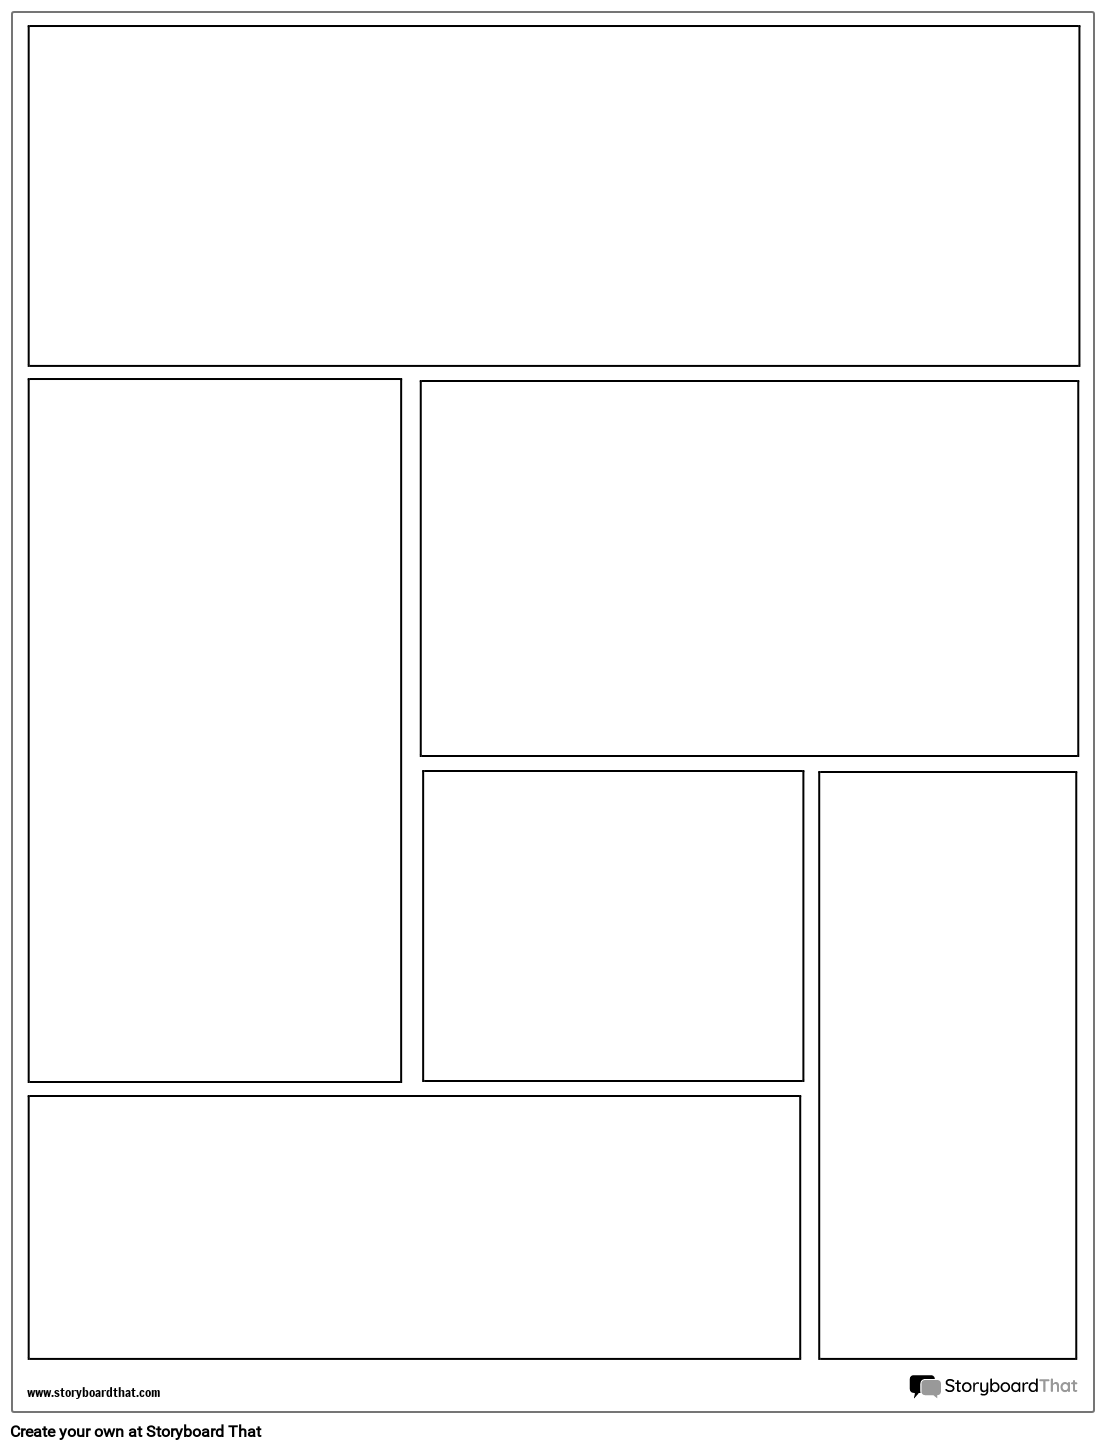 Graphic Novel-Layout-Raster aus 6 Rechtecken und Quadraten